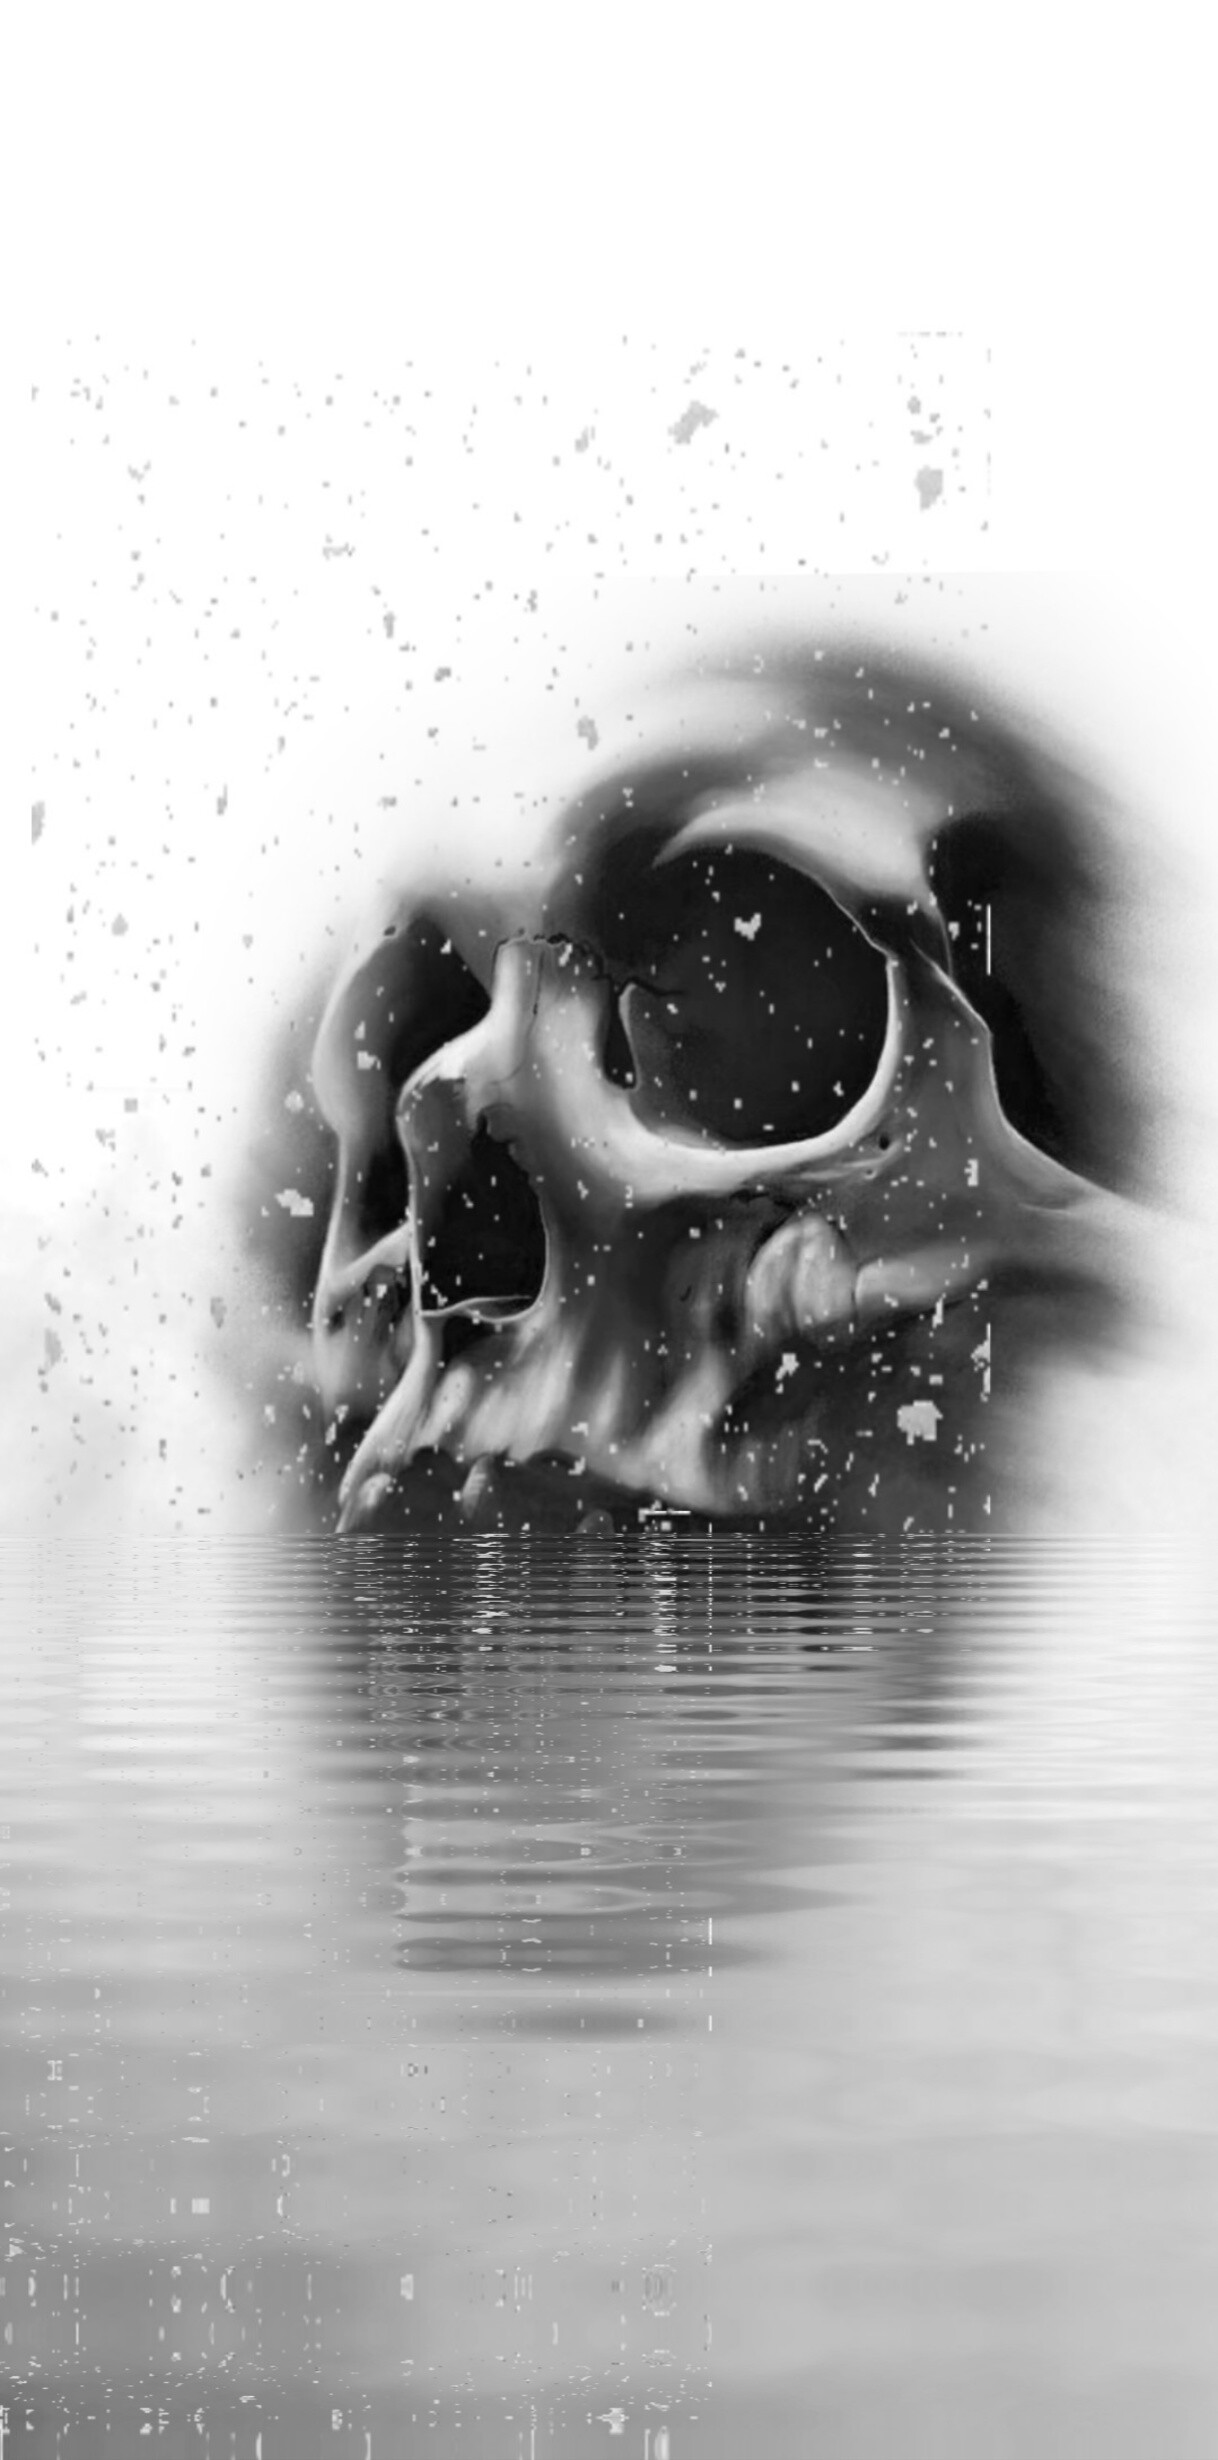 ArtStation - Lake Skull